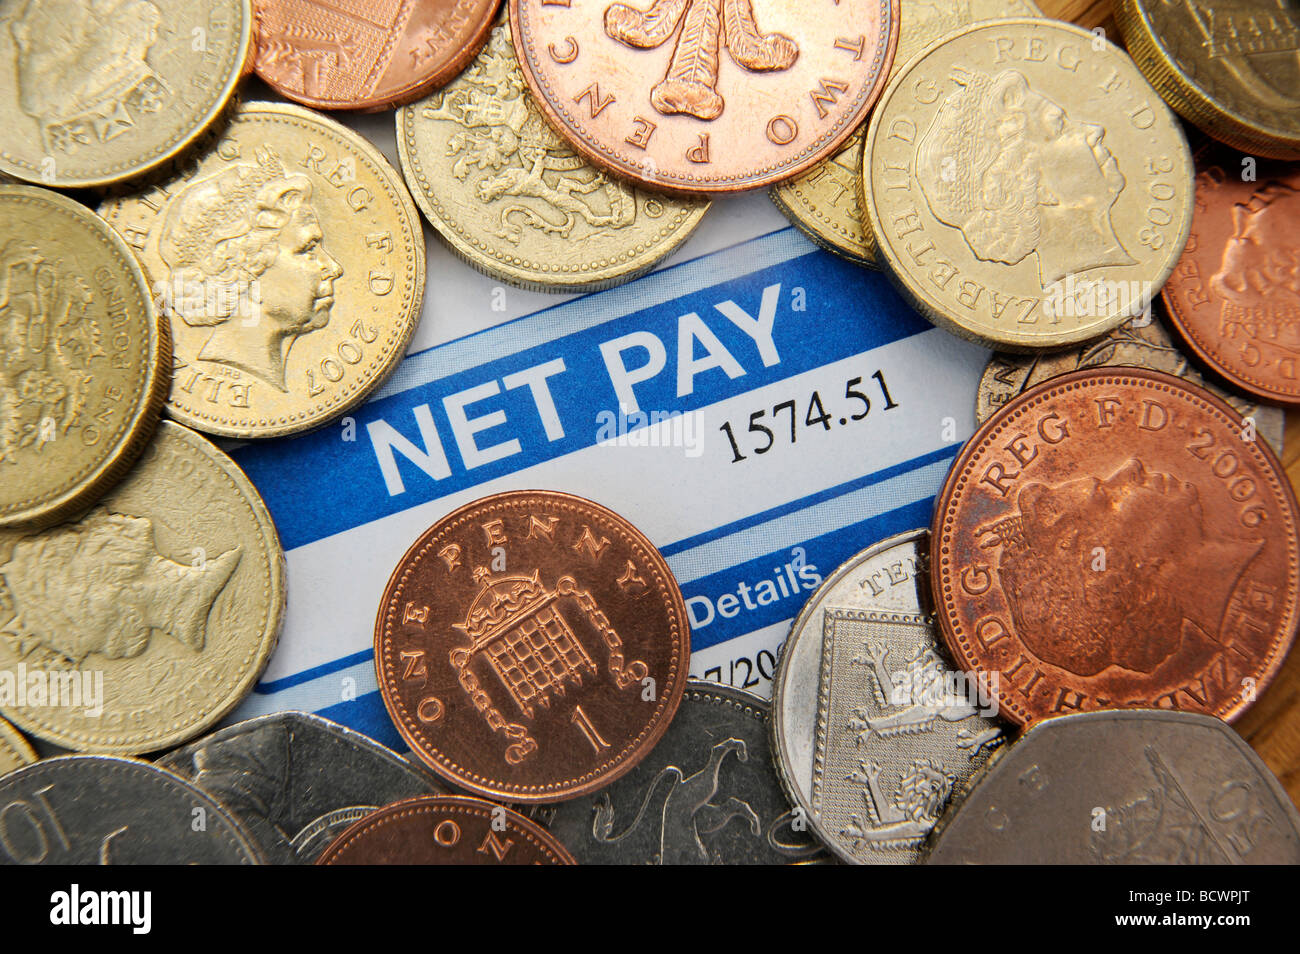 Britische Lohnzettel zeigt Netto Zahlen mit britischen Münzen wieder Lohn Nettogehalt Einkommen Rezession Credit Crunch Abschwung Geld UK einfrieren. Stockfoto